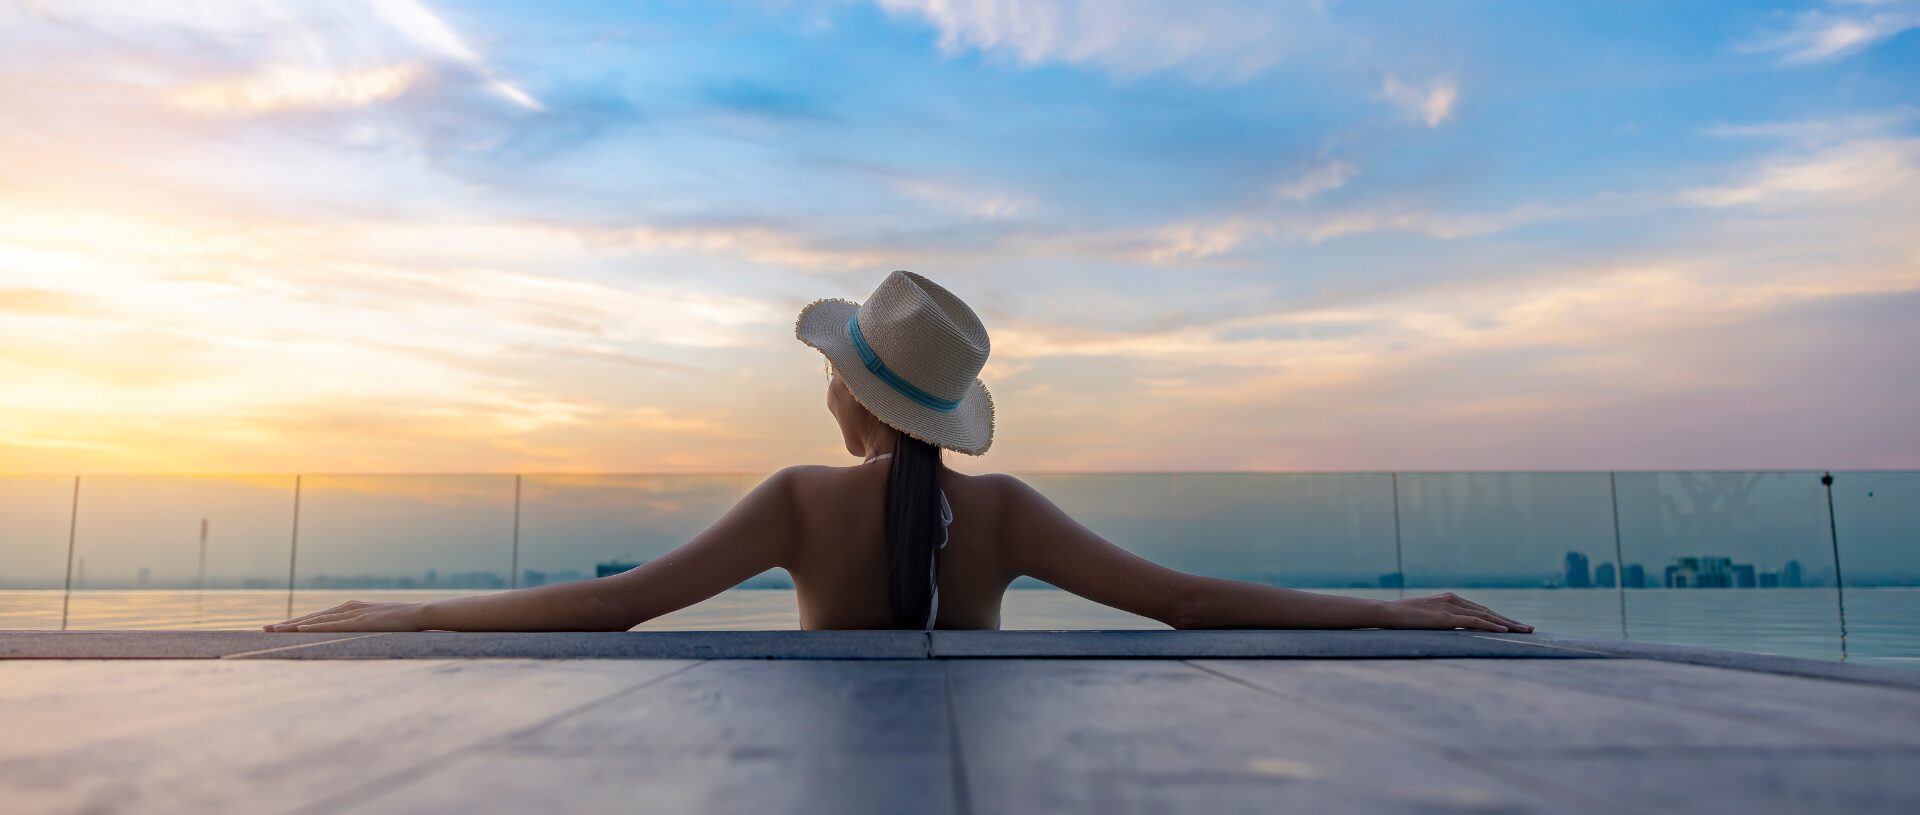 woman-wearing-hat-enjoying-pool-sunset